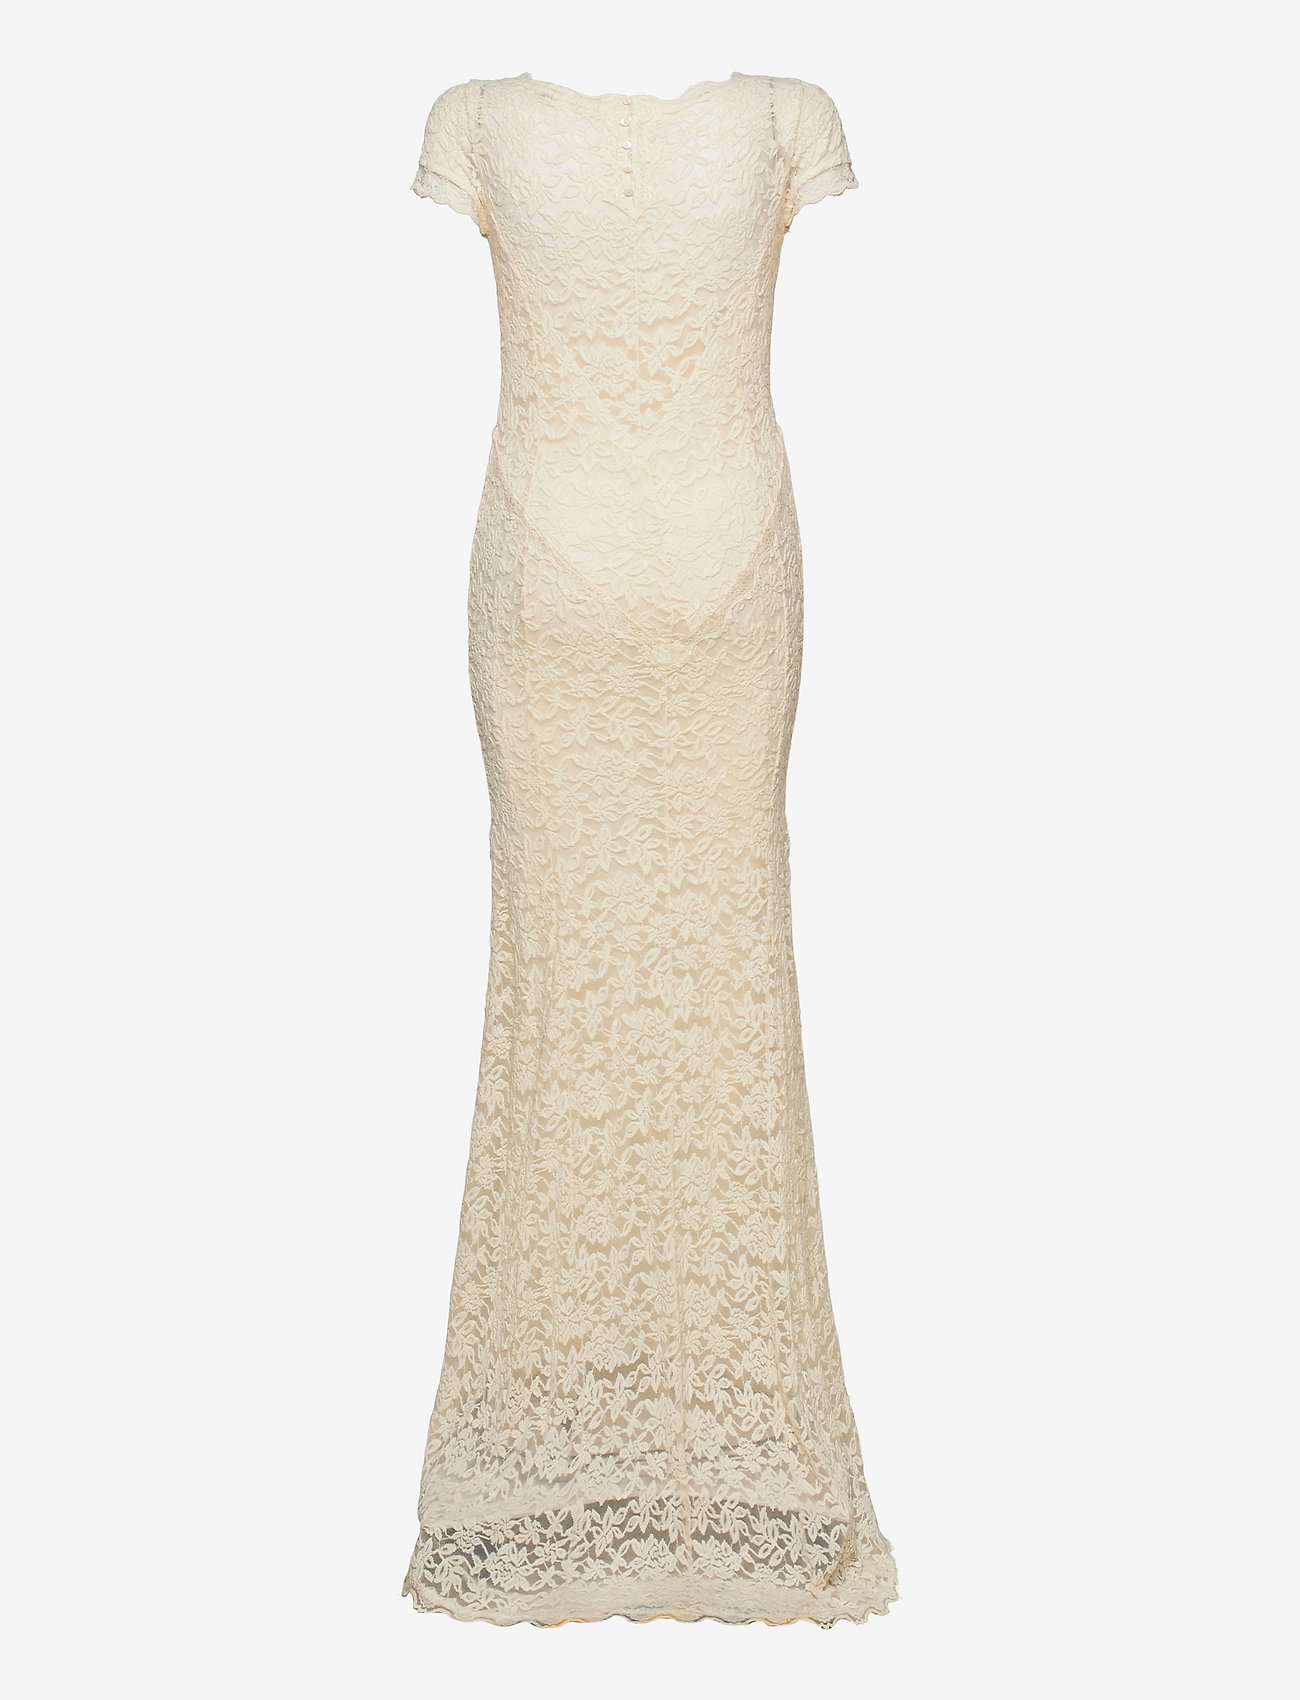 Rosemunde - Dress ss - sukienki koronkowe - ivory - 1